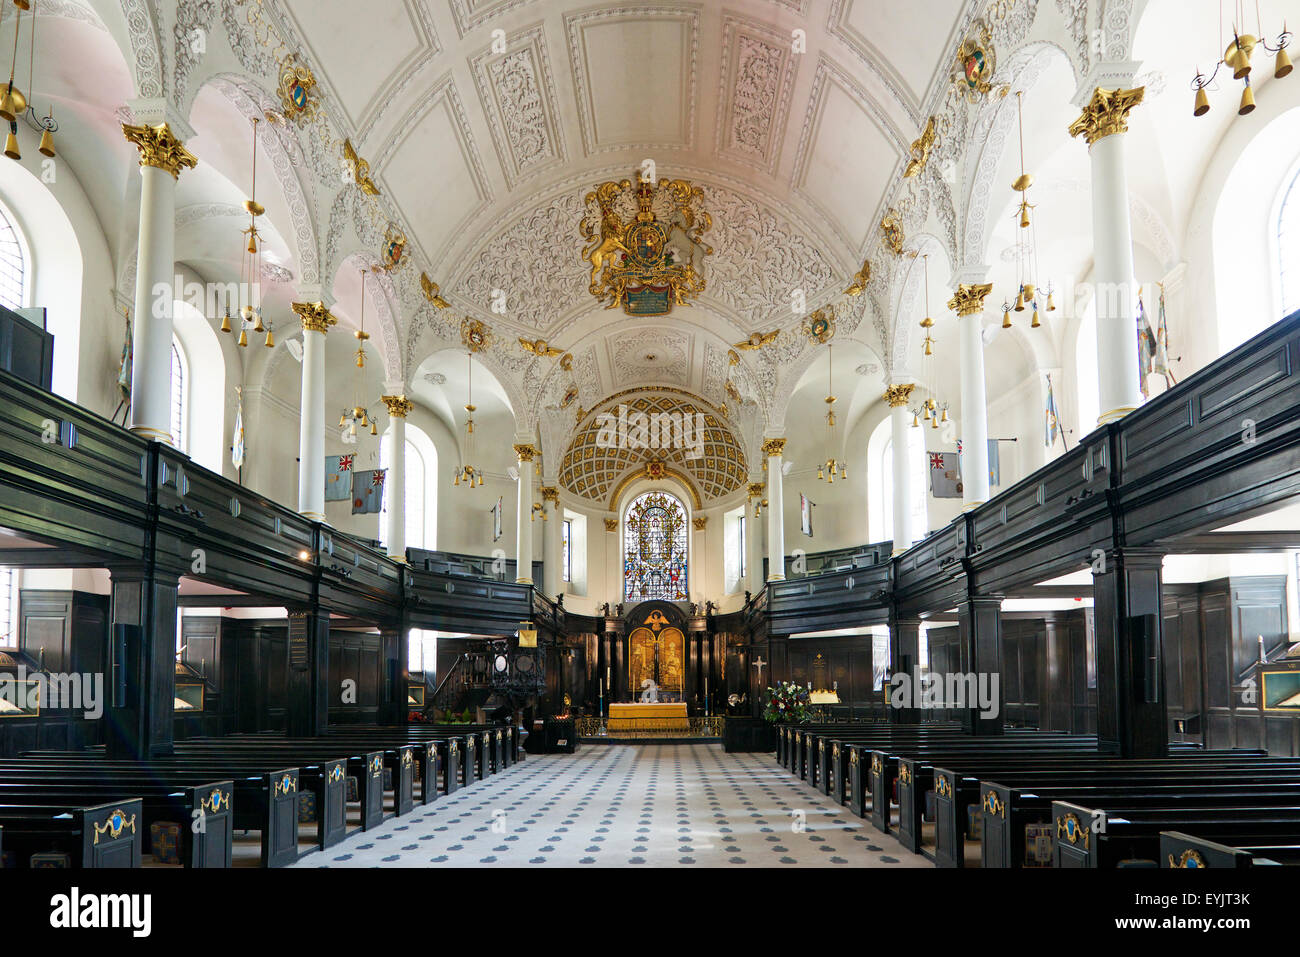 Clemenr Église Saint intérieur danois Strand Londres Angleterre Banque D'Images